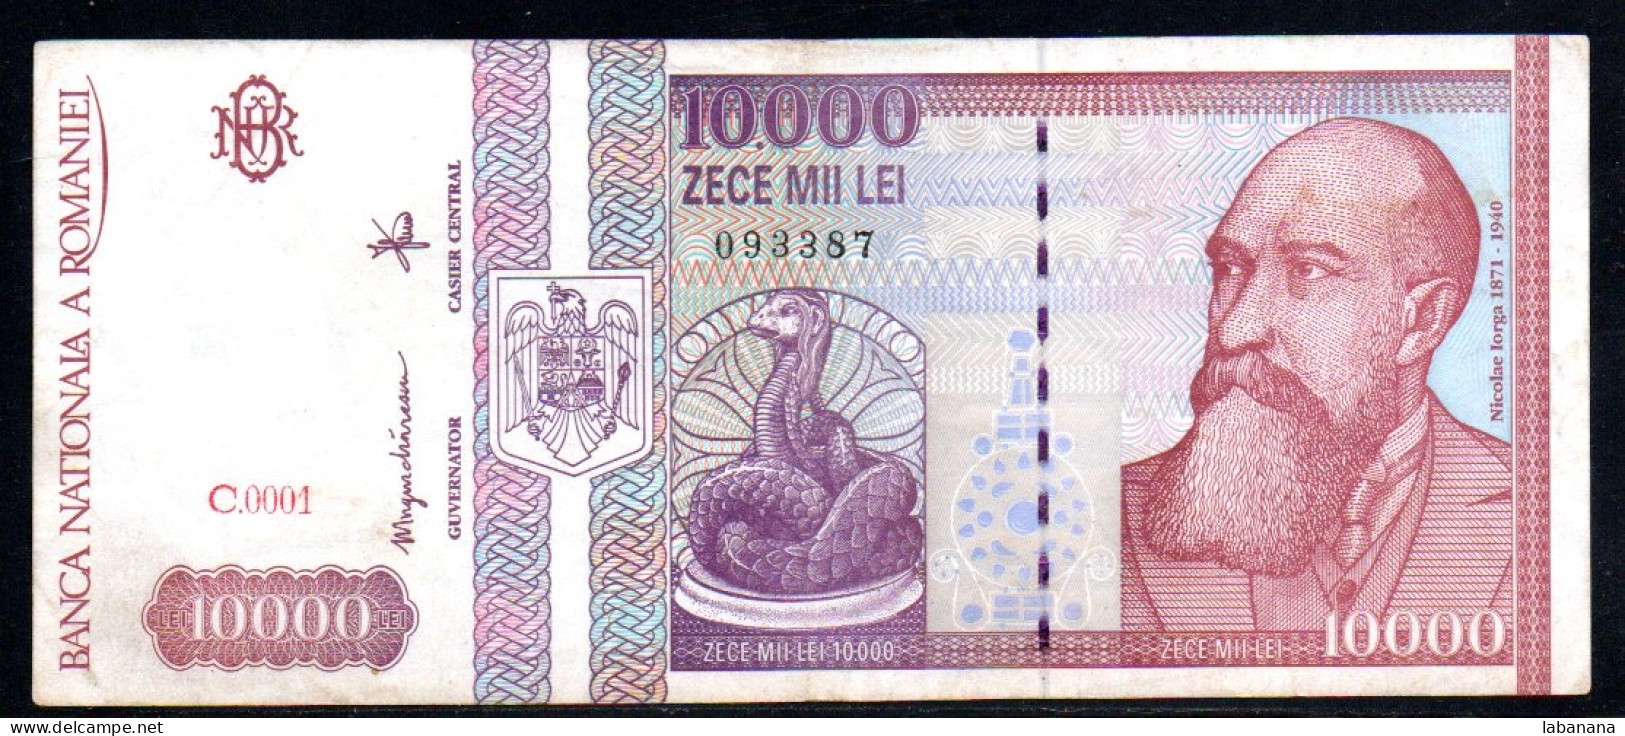 659-Roumanie 10 000 Lei 1994 C0001 - Roumanie